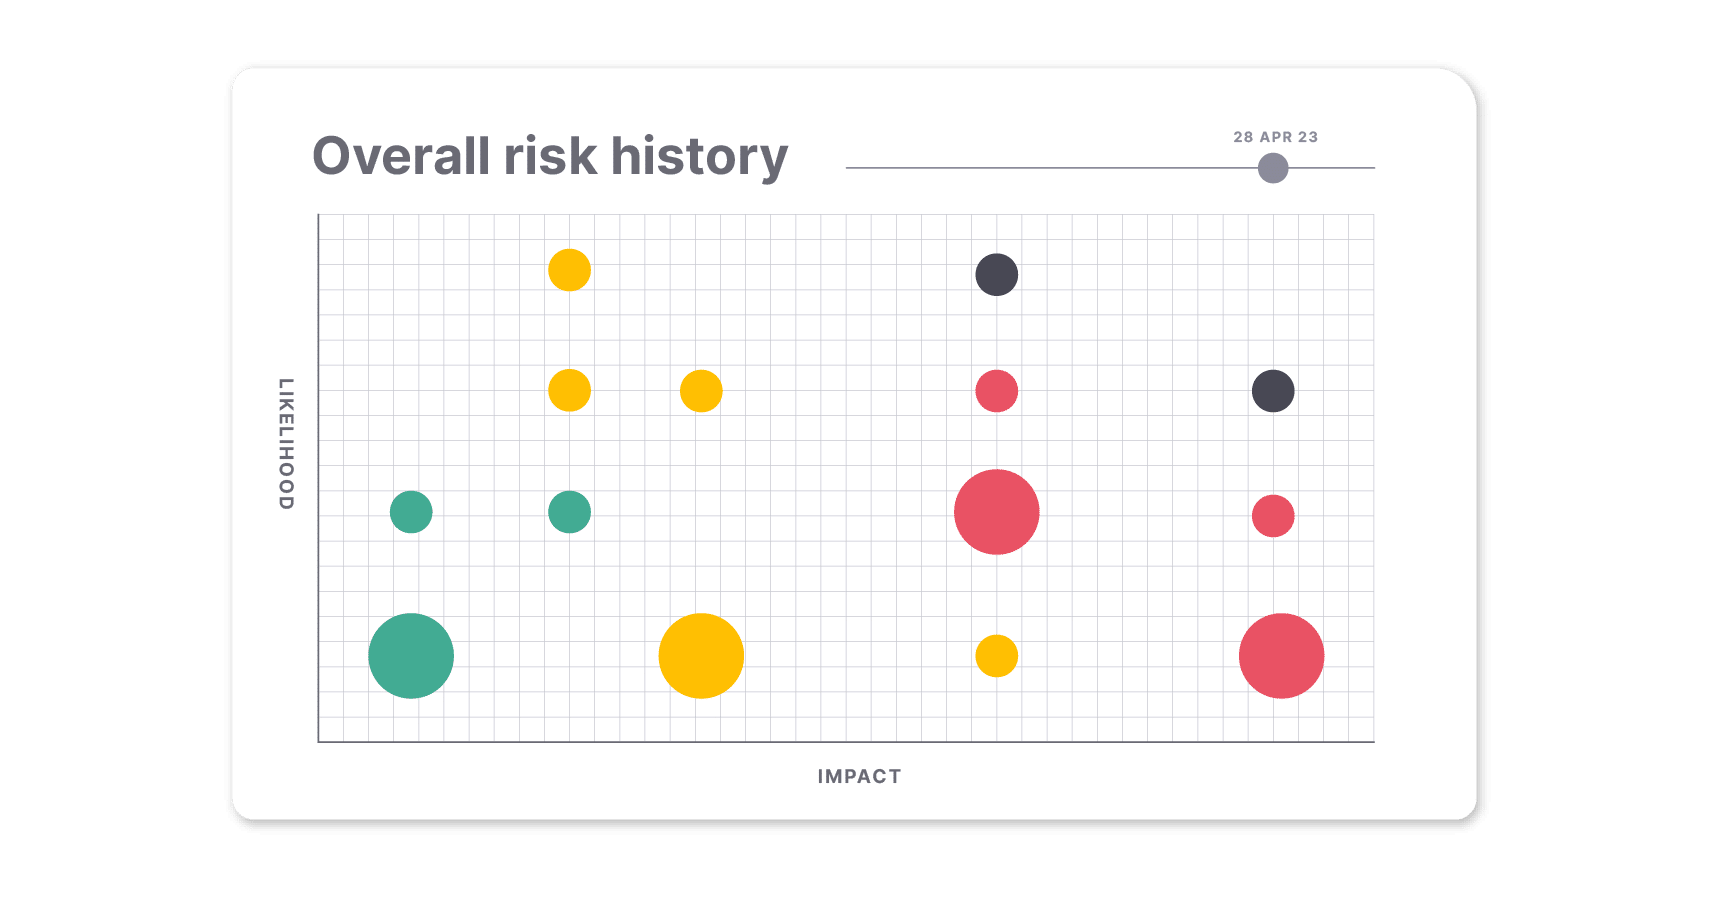 עקוב אחר האופן שבו הסיכונים שלך התפתחו לאורך זמן באמצעות גרף היסטוריית הסיכונים הכוללת